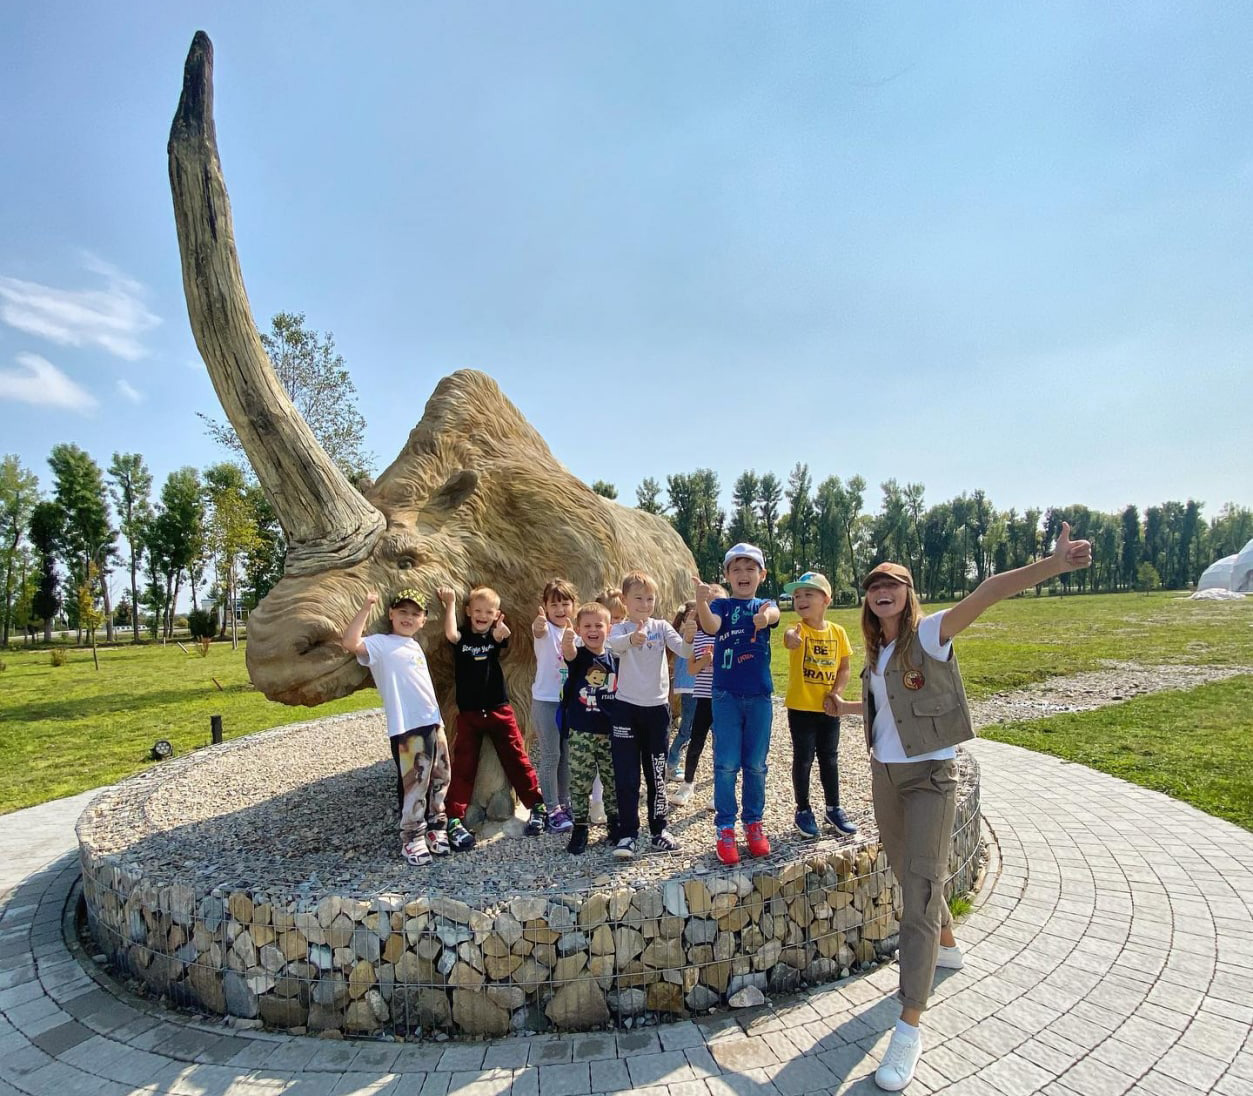 Останки стародавнього носорога археологи знайшли неподалік села, а у парку відтворили його у скульптурі. Фото: facebook.com/parkzemli